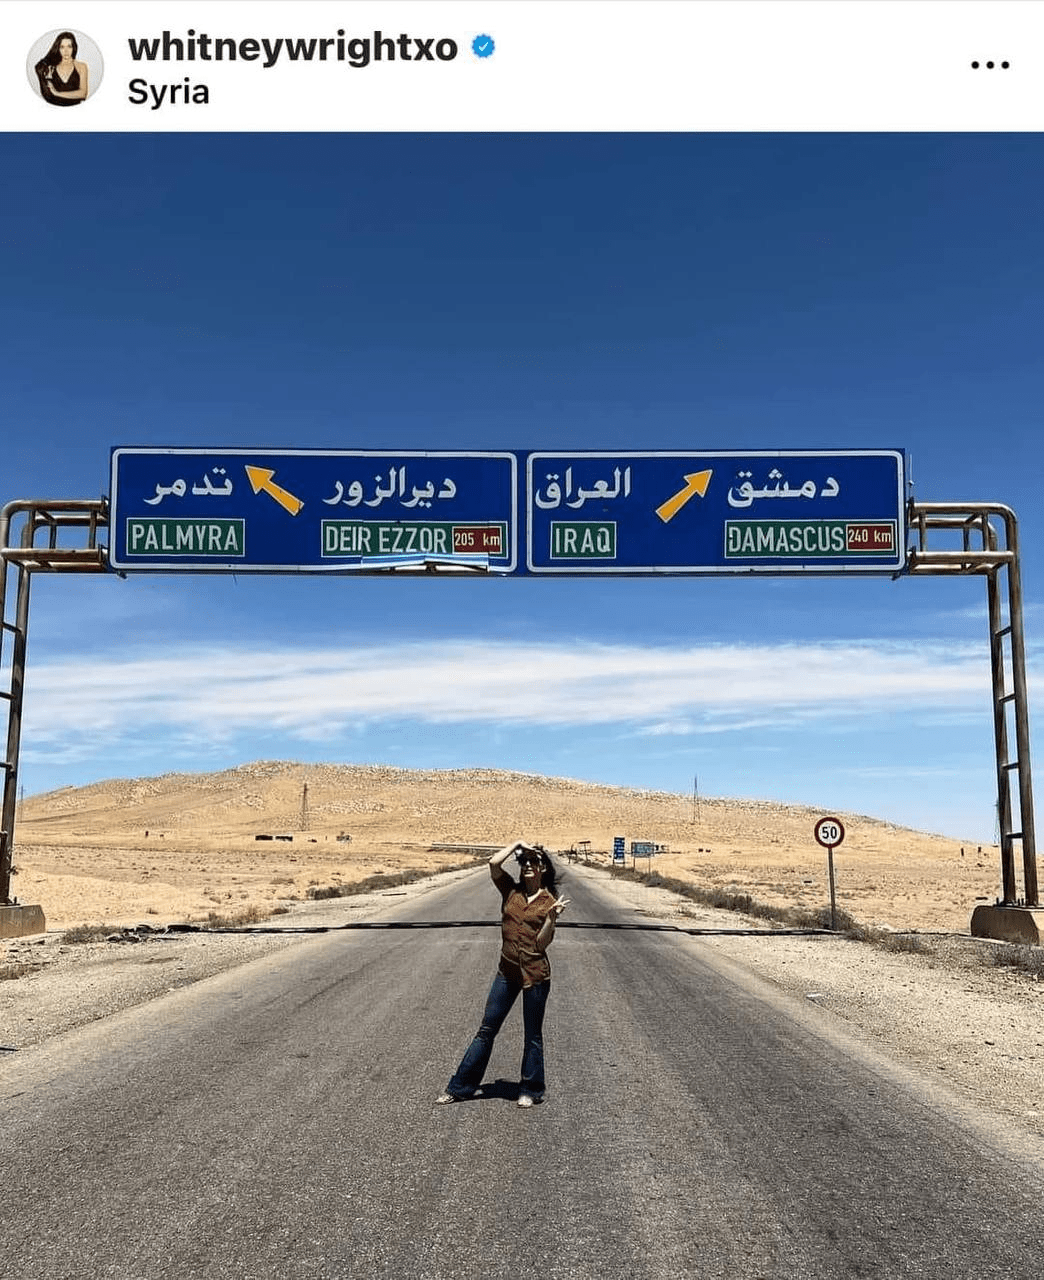 ممثلة الأفلام الإباحية والجنسية ويتني رايت تشارك صور لها من زيارتها لسورية